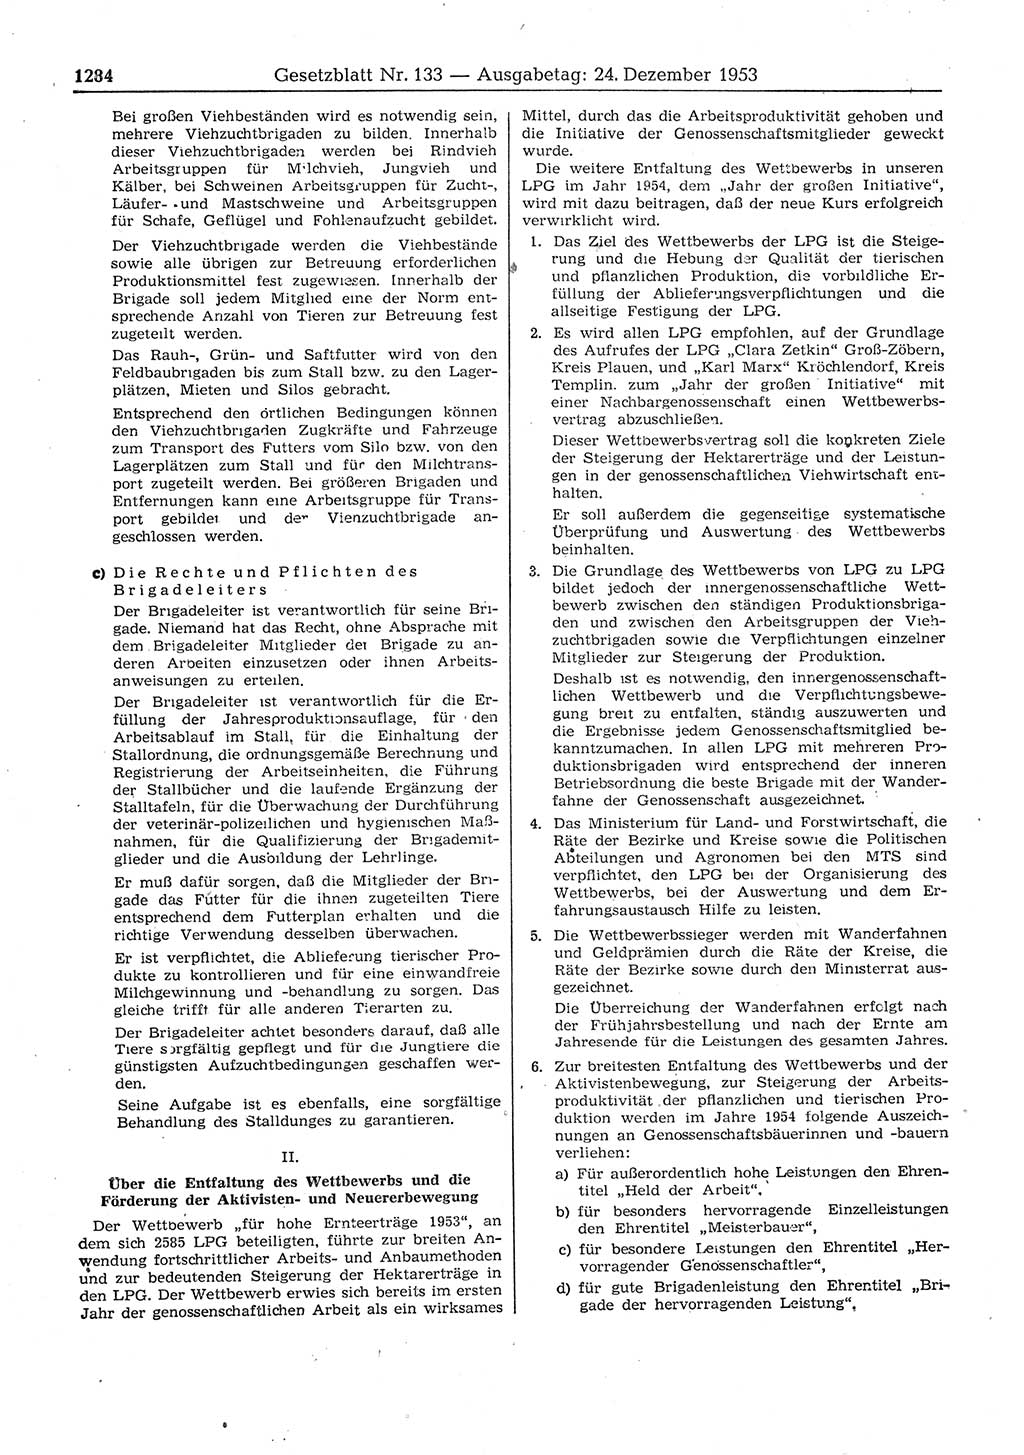 Gesetzblatt (GBl.) der Deutschen Demokratischen Republik (DDR) 1953, Seite 1284 (GBl. DDR 1953, S. 1284)